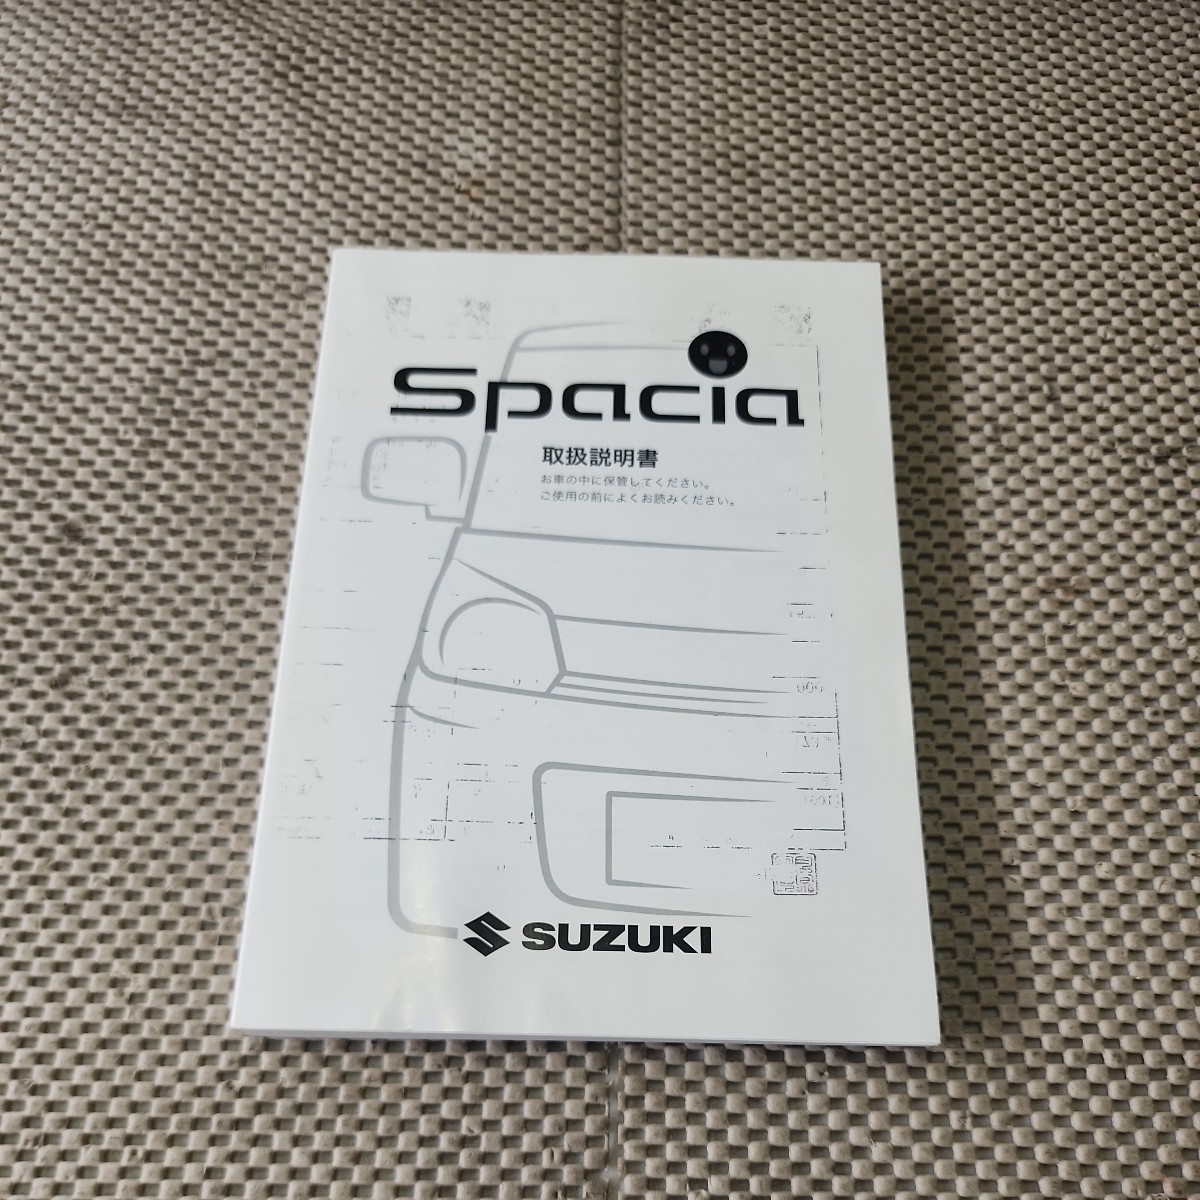  Spacia SPACIA MK53S обращение информация 2014 год 1 месяц печать (H231006)